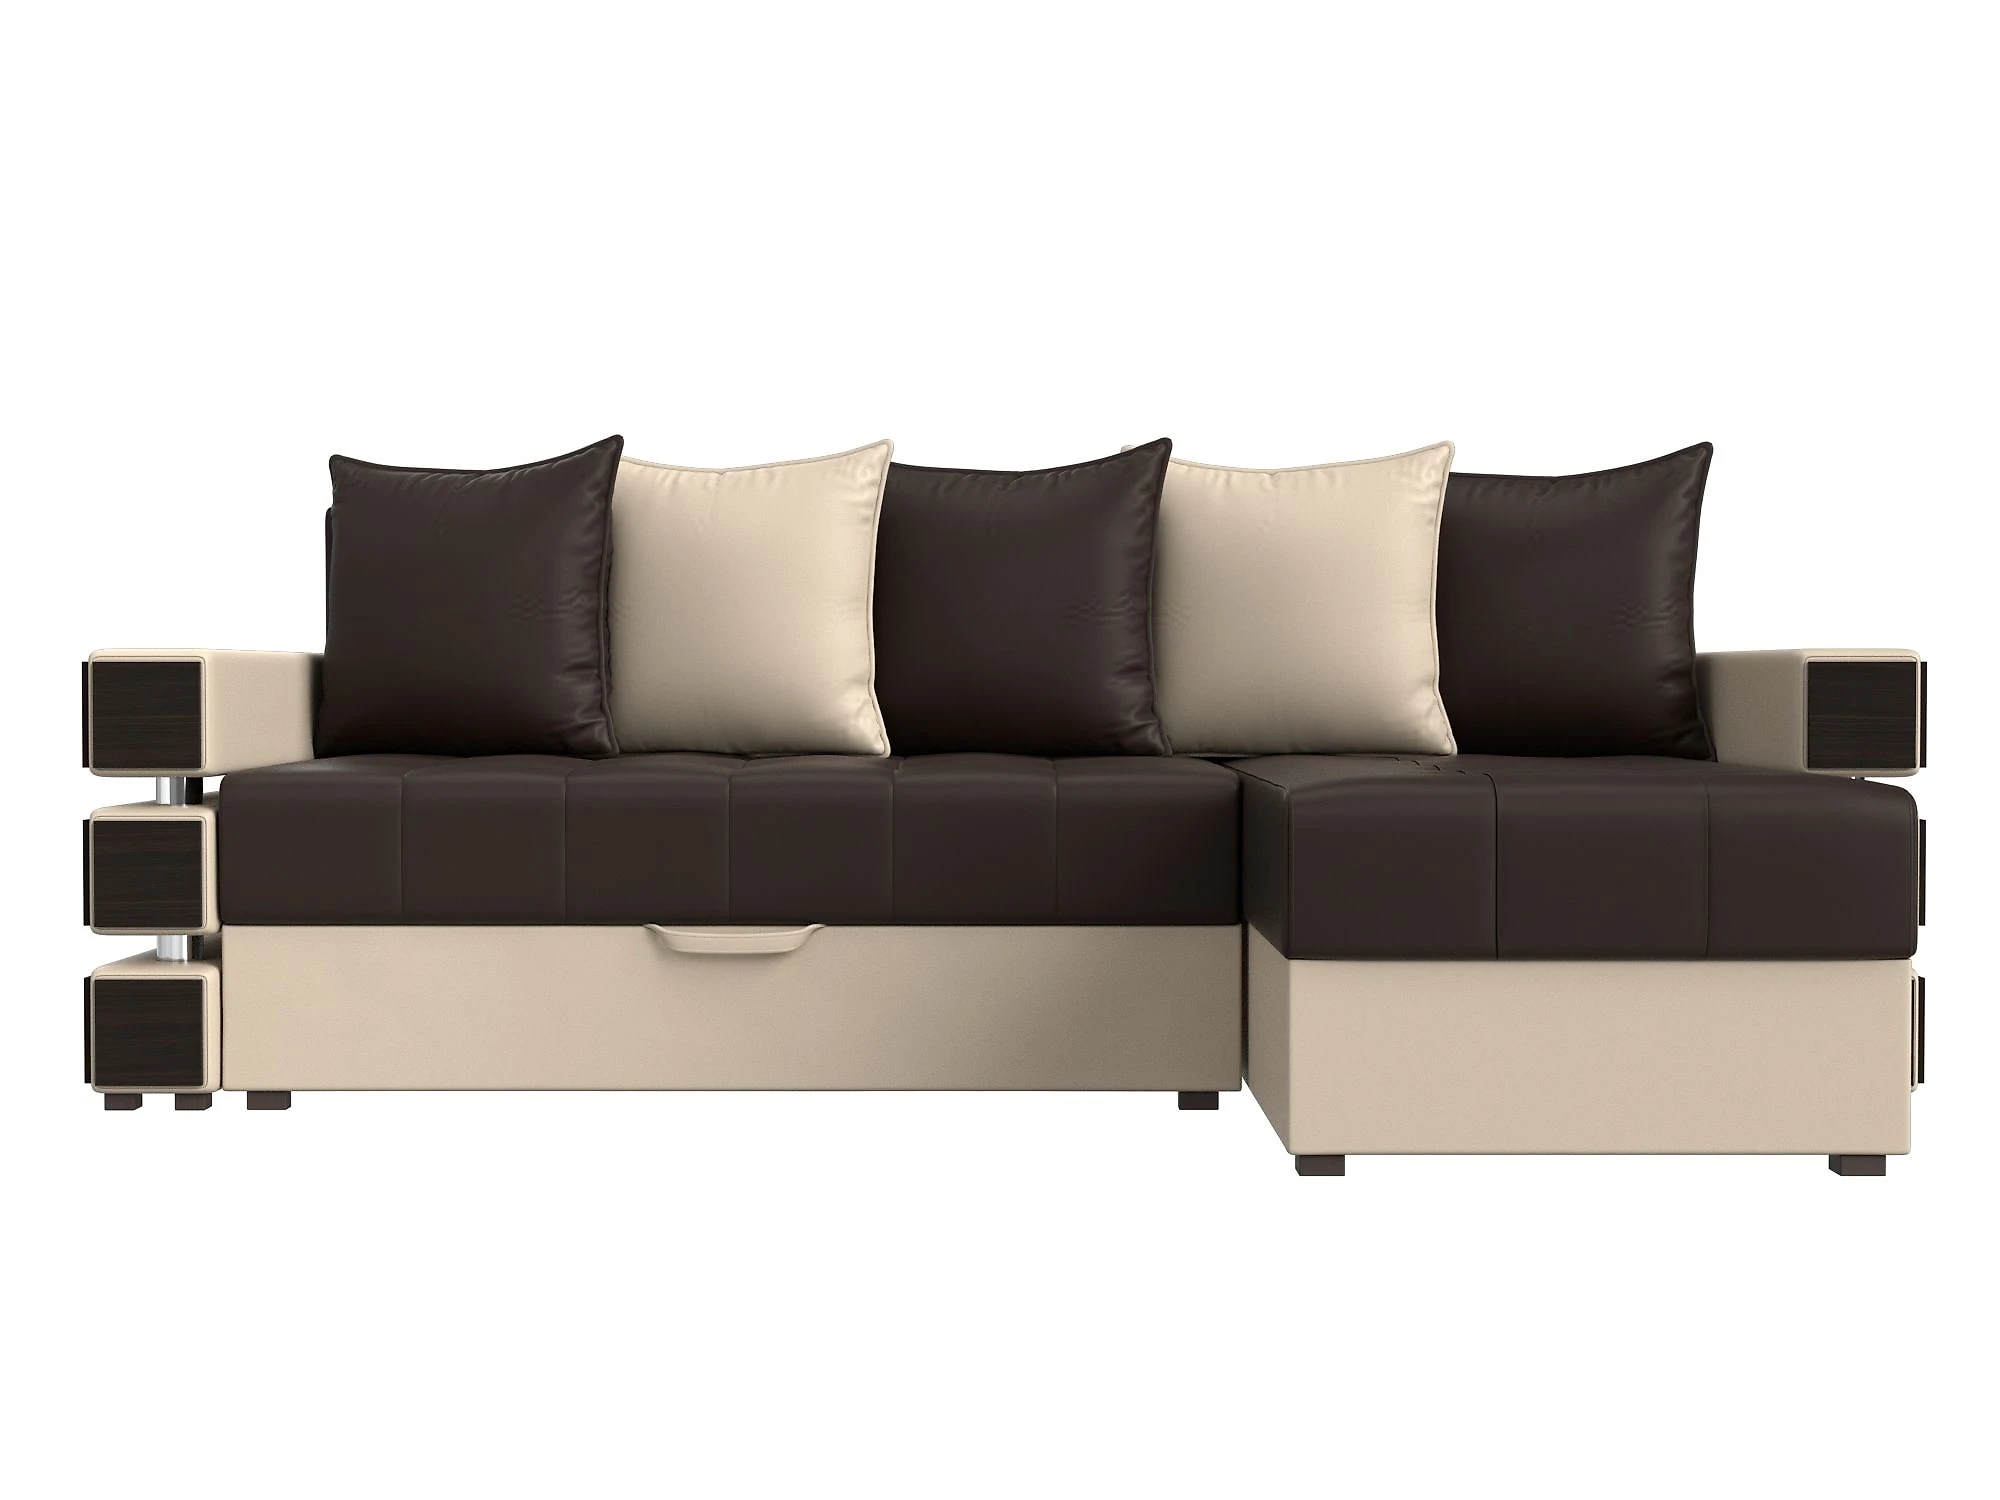  кожаный диван еврокнижка Венеция Дизайн 5